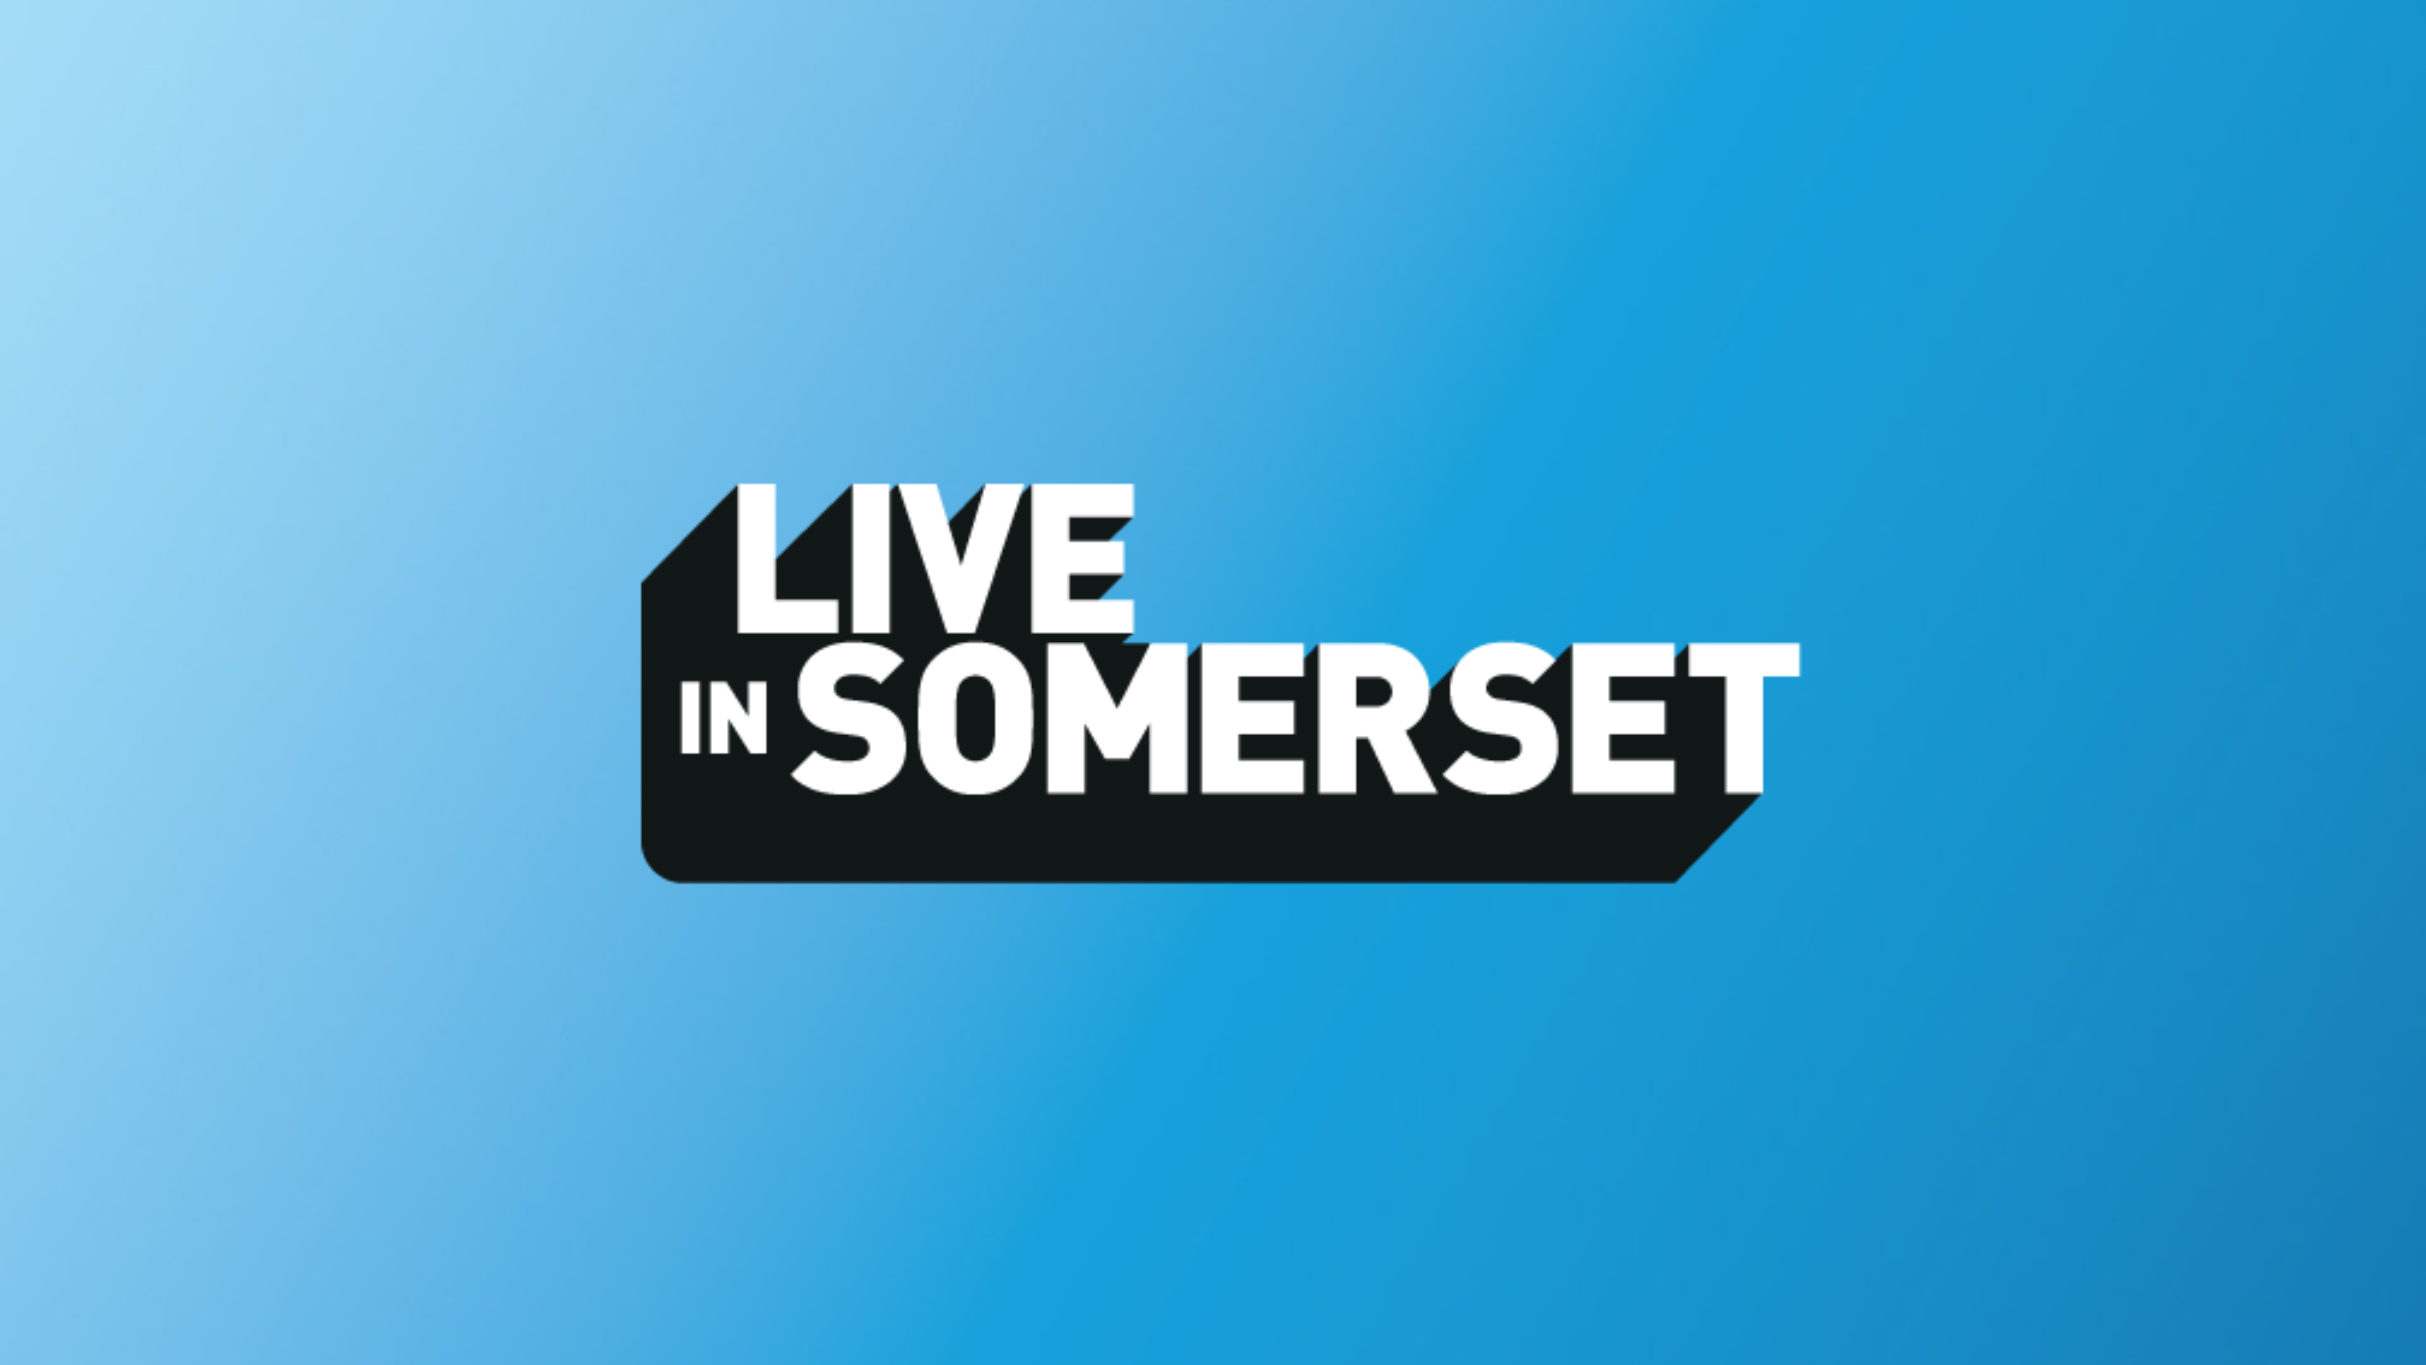 Live in Somerset presale information on freepresalepasswords.com